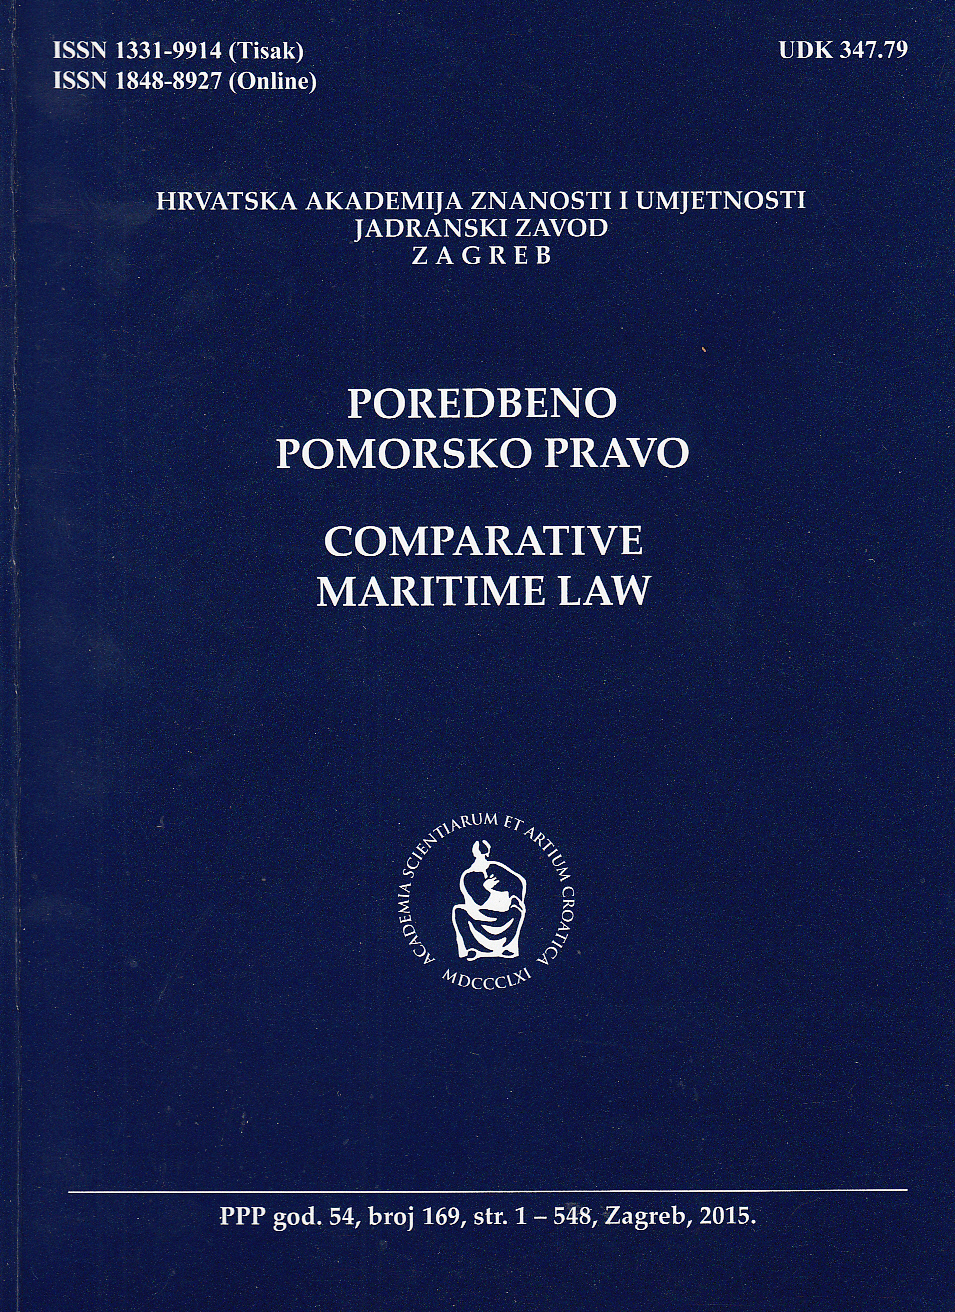 Maritime Law : Collected works (author: Georgij Ivković) (publishers: Društvo za pomorsko pravo Slovenije ; Hrvatsko društvo za pomorsko pravo, 2013) Cover Image